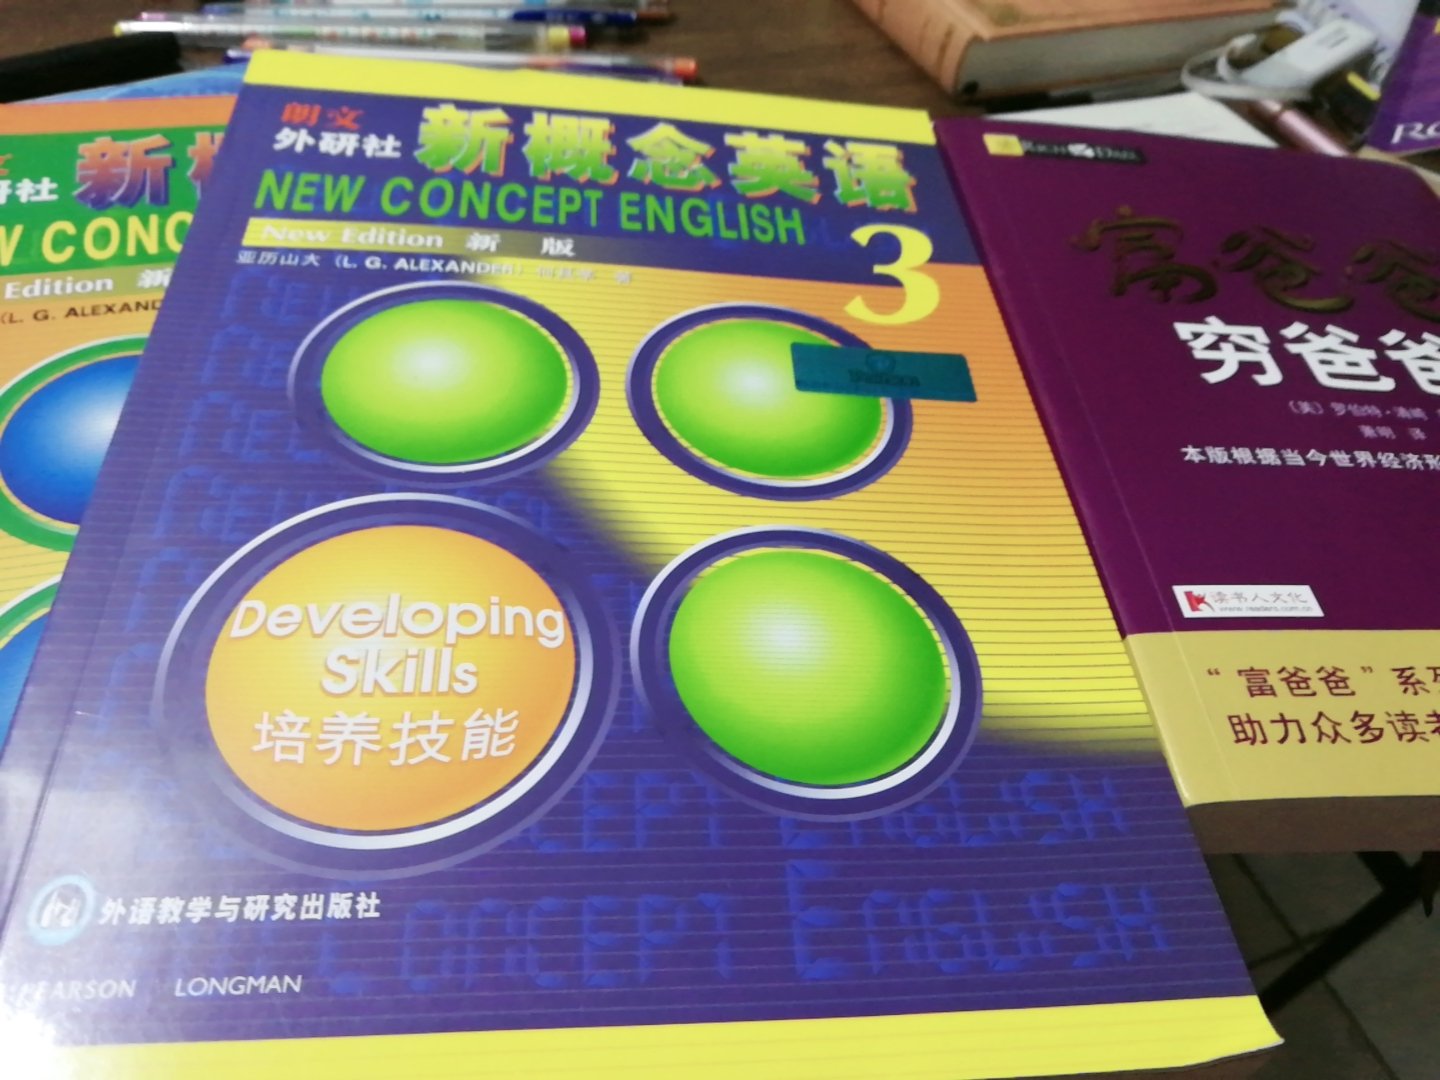 书很好，全新的，买了一本英文的和这本中文的，两本差别很大，更喜欢中文的。而且英文的还很贵